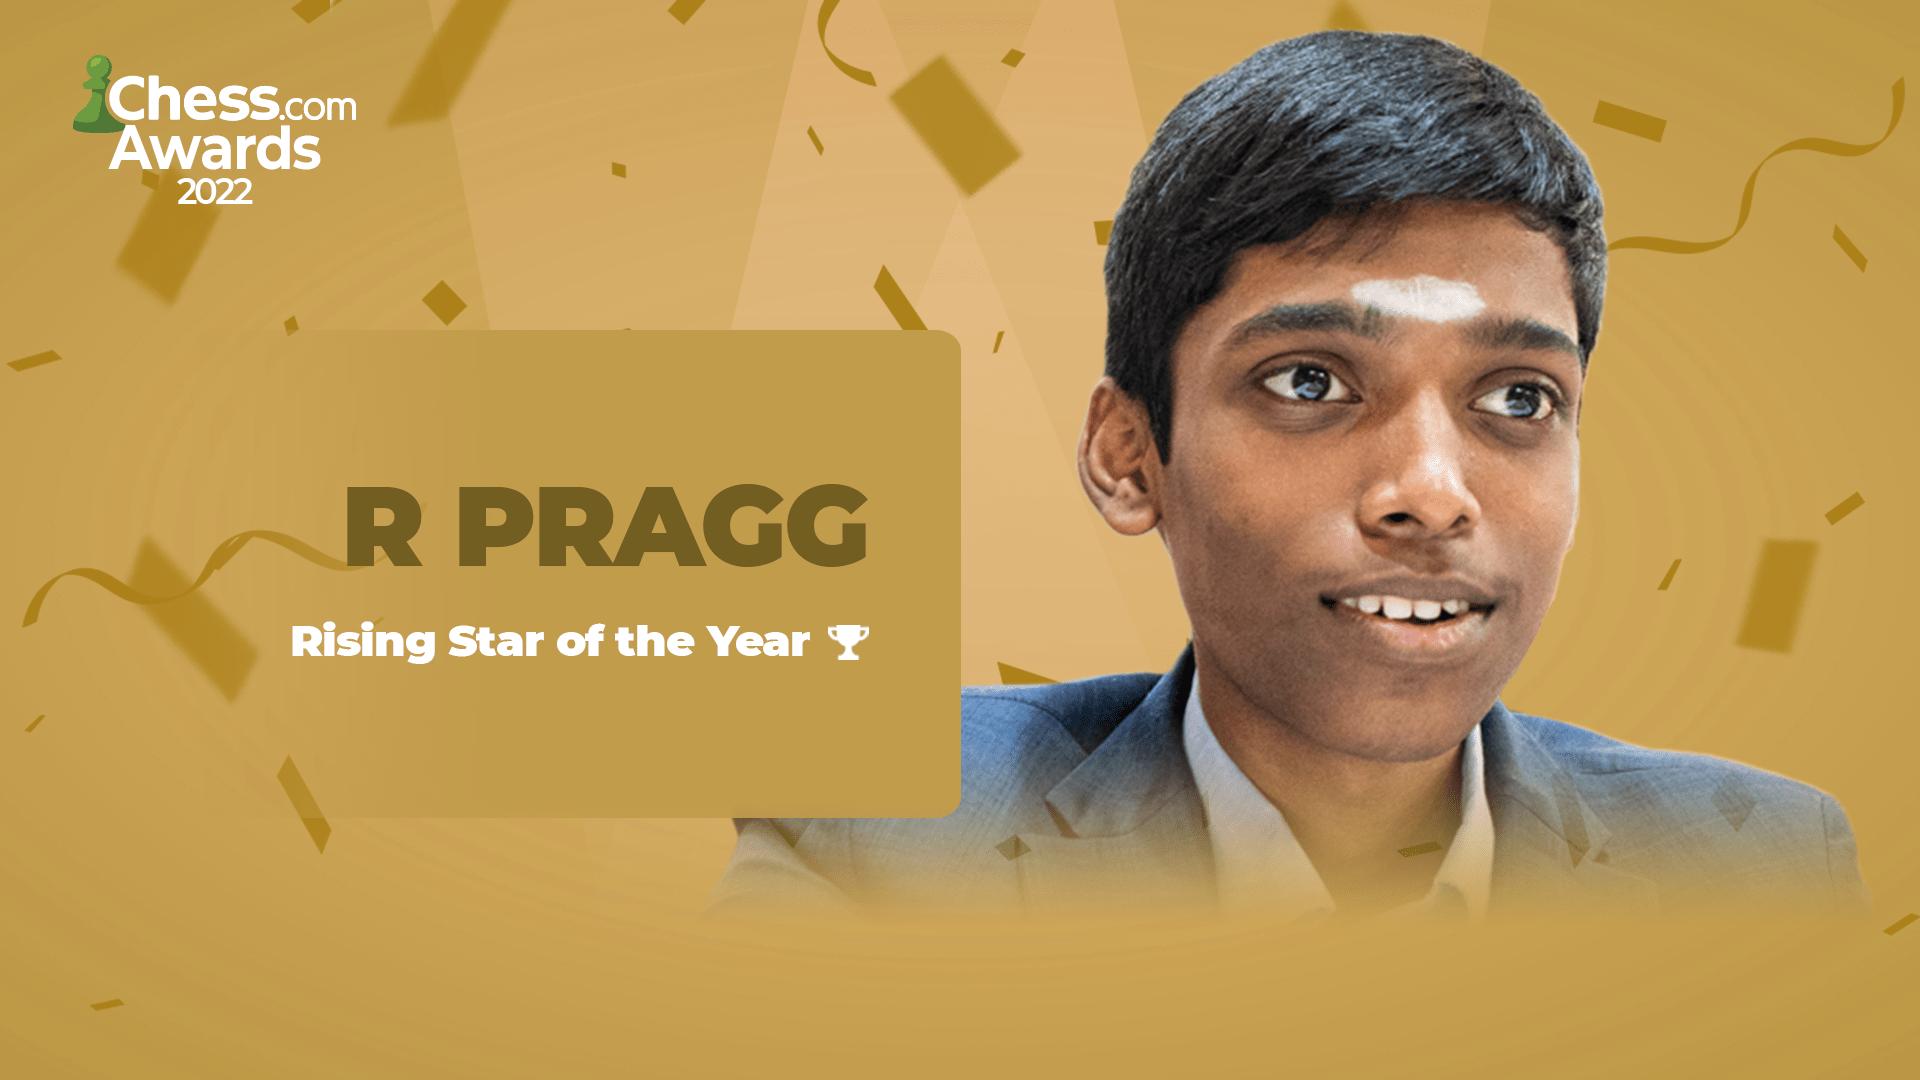 2022 Chess.com Awards Winners Rising Star Praggnanandhaa